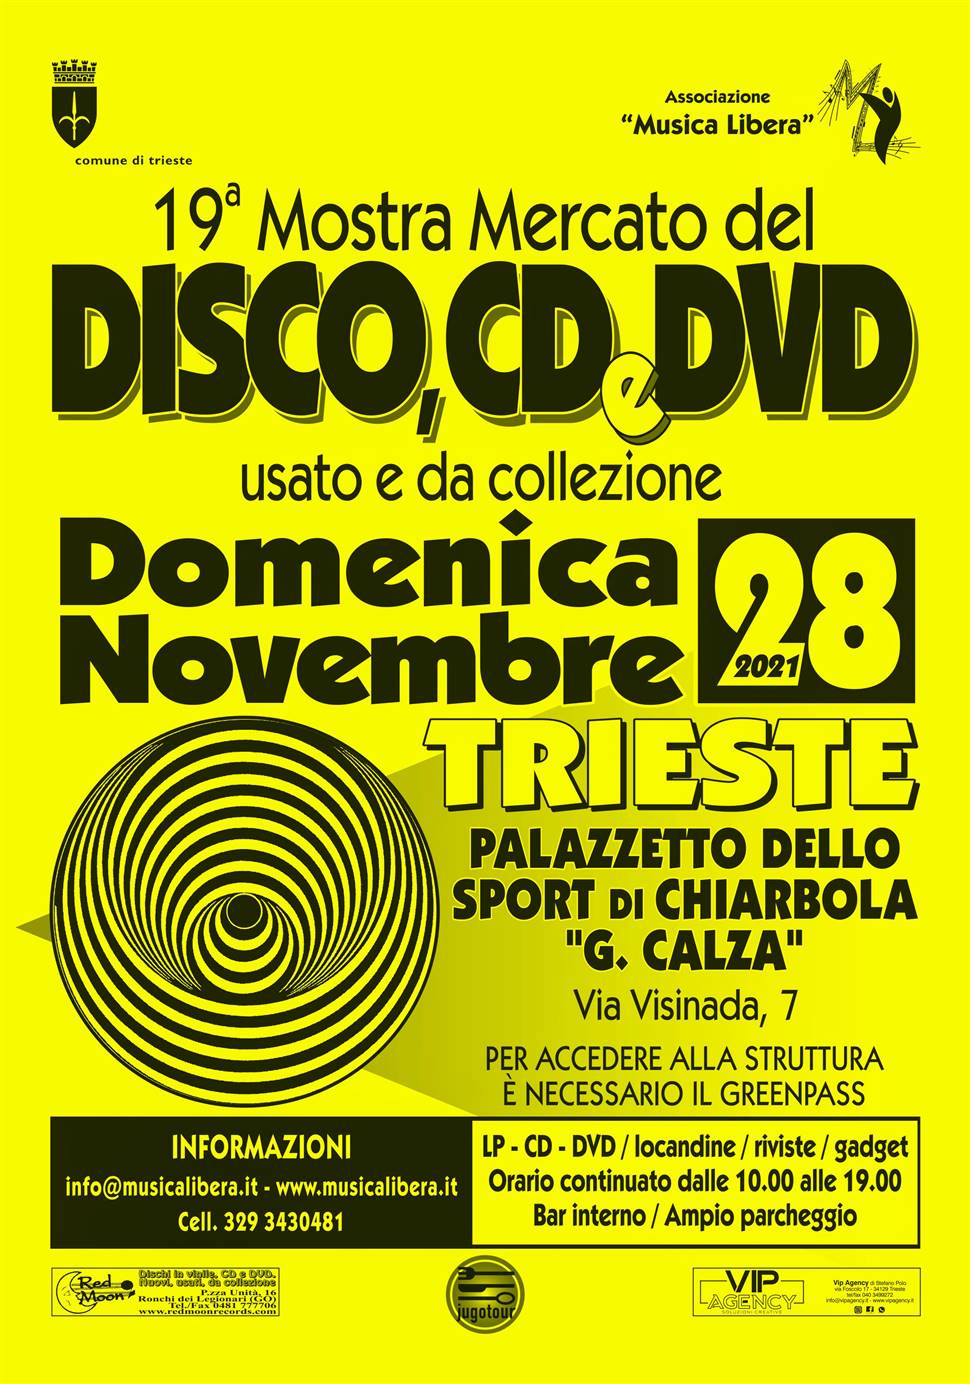 Mostra mercato del Disco usato e da collezione a Trieste